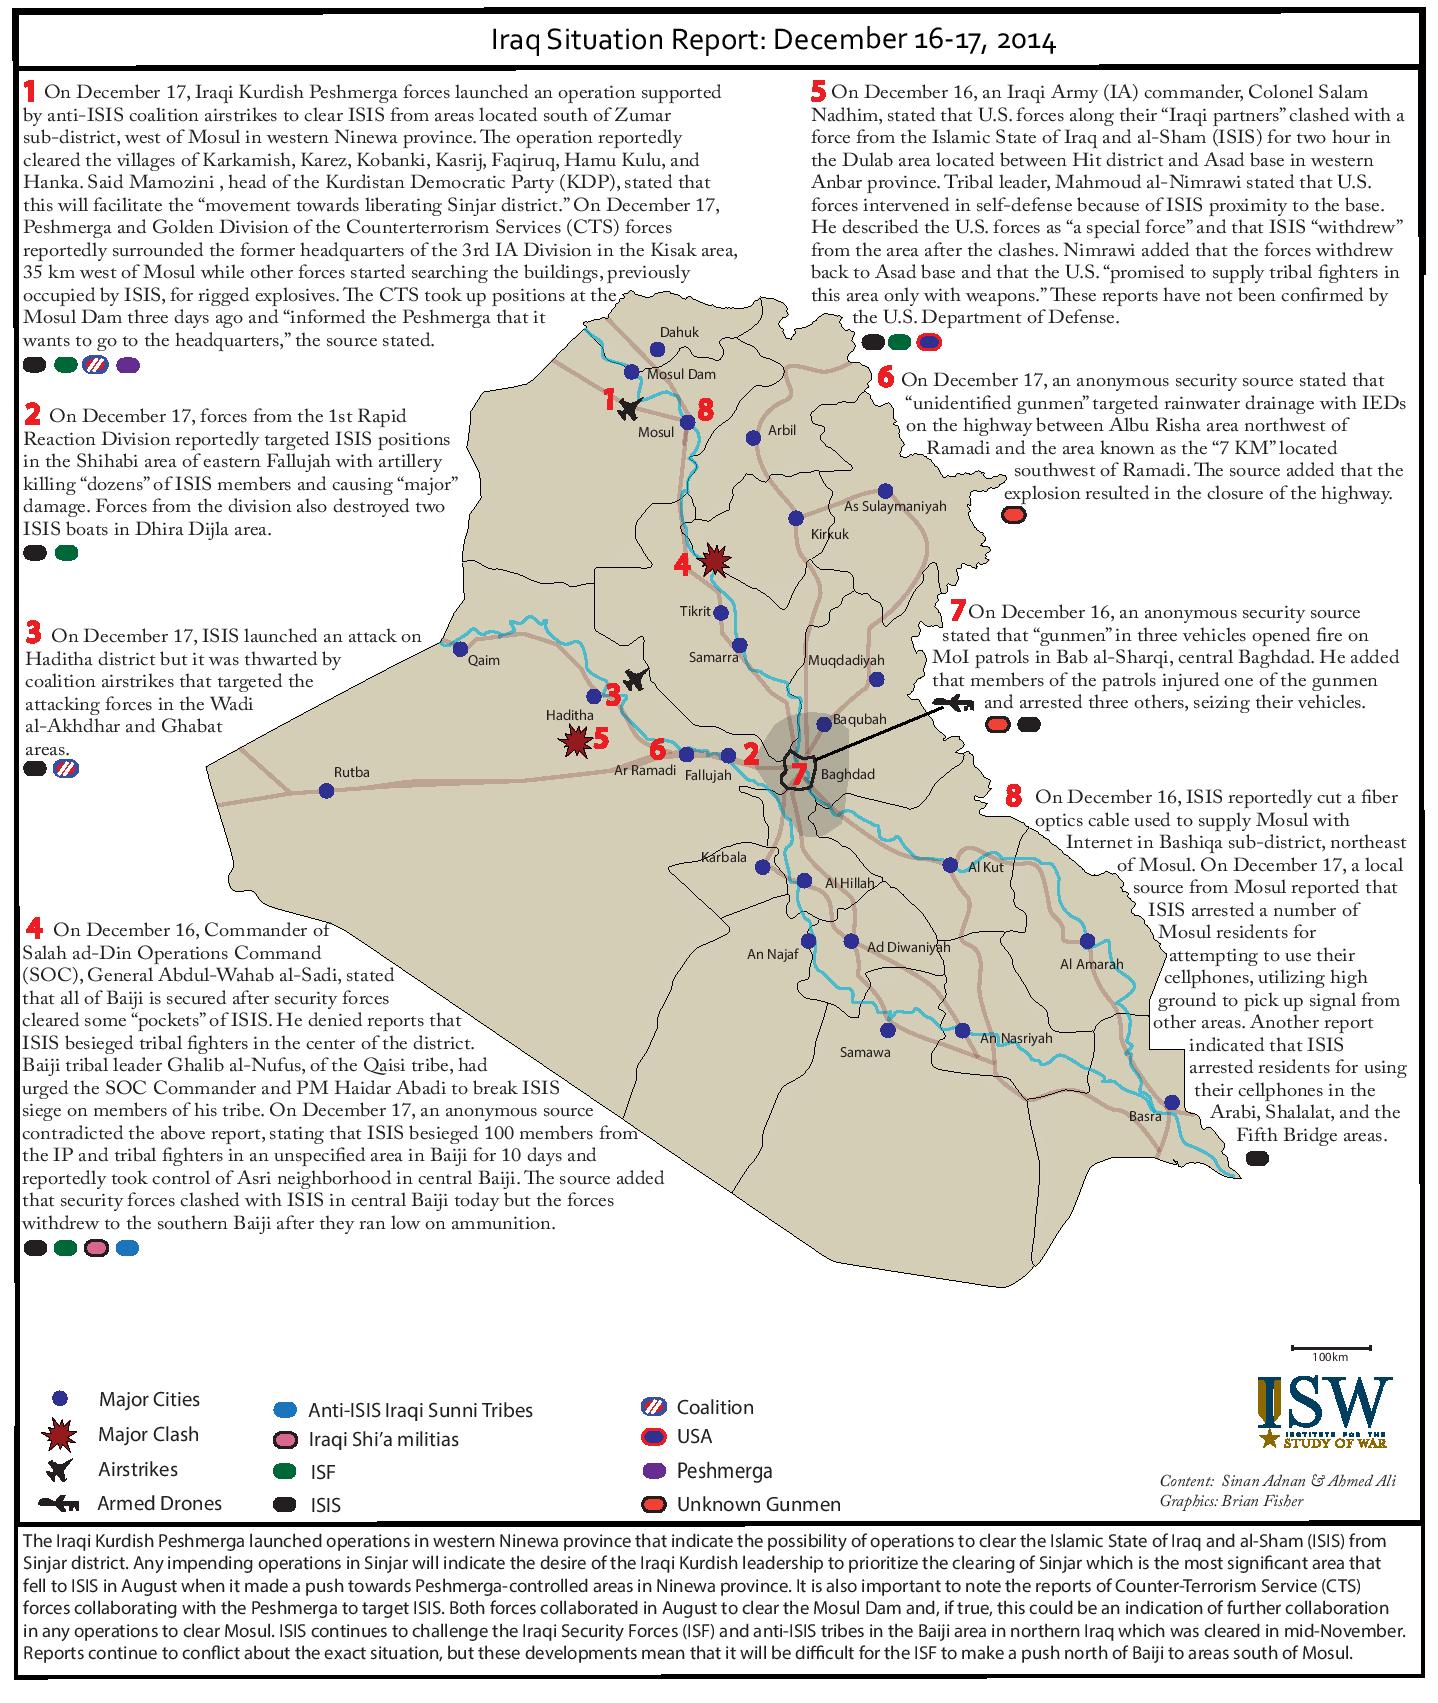 تقرير يكشف اوضاع العراق خلال يومي 16-17 كانون الاول/ديسمبر 2014